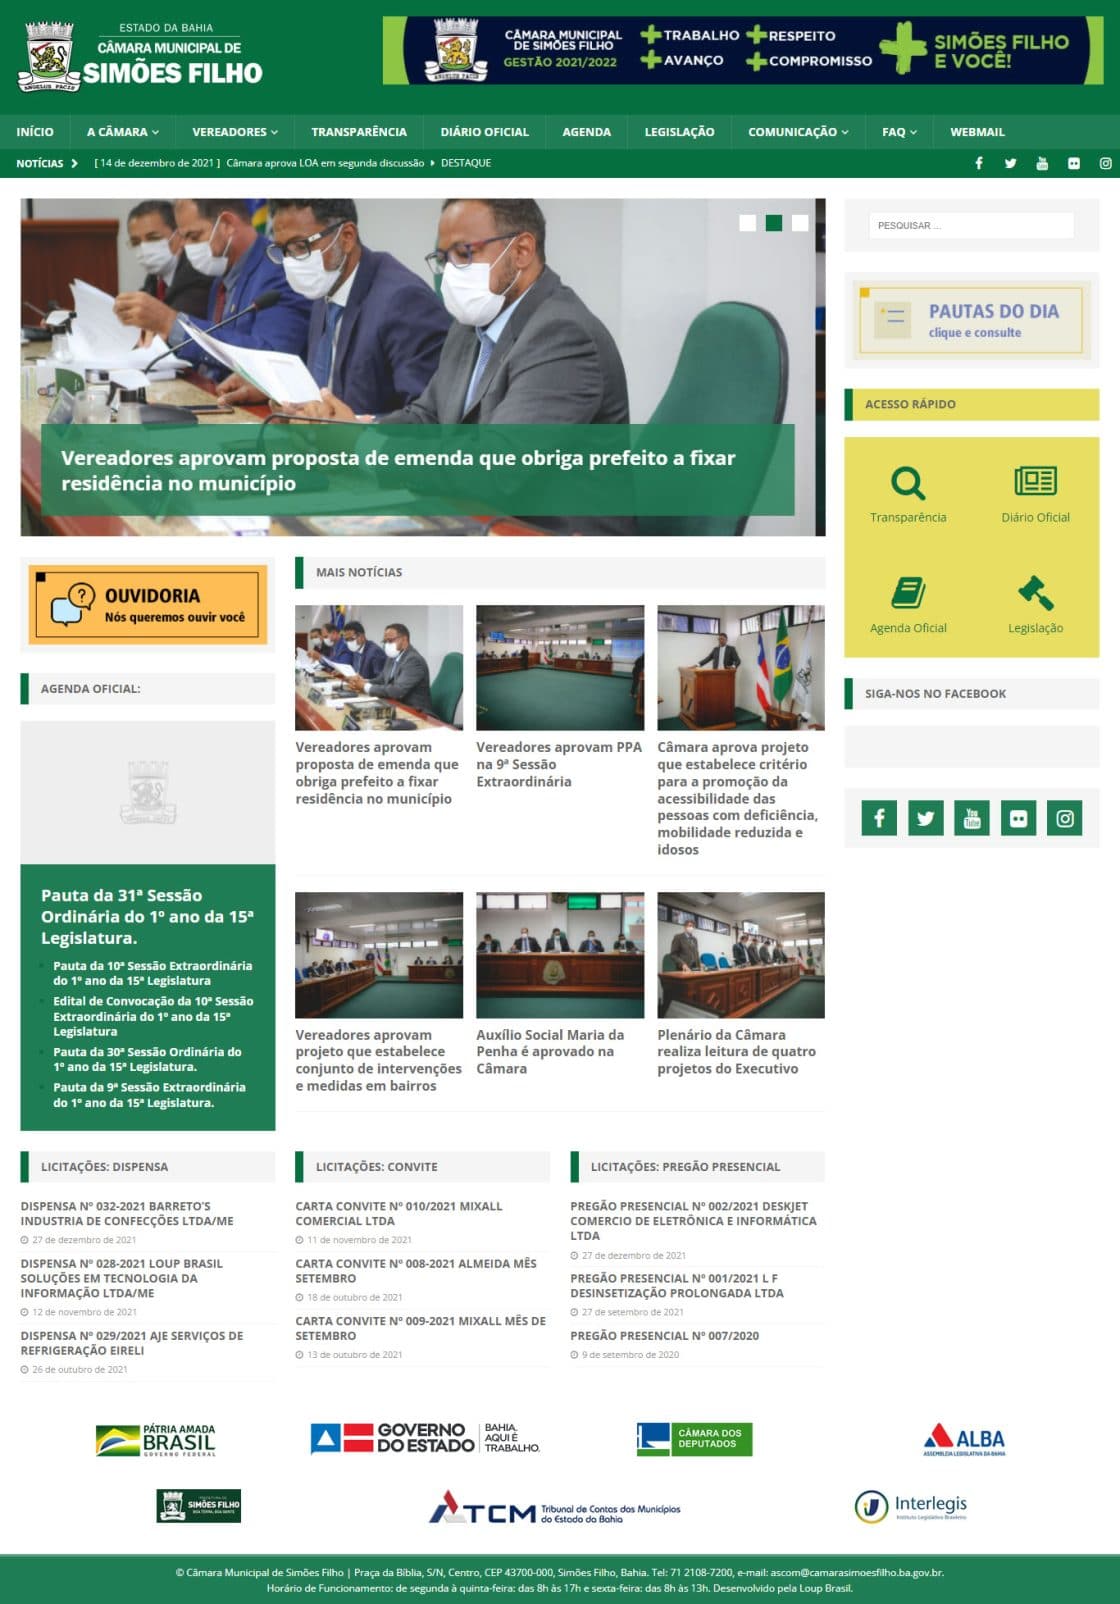 Print da página principal do site da Câmara Municipal de Simões Filho.